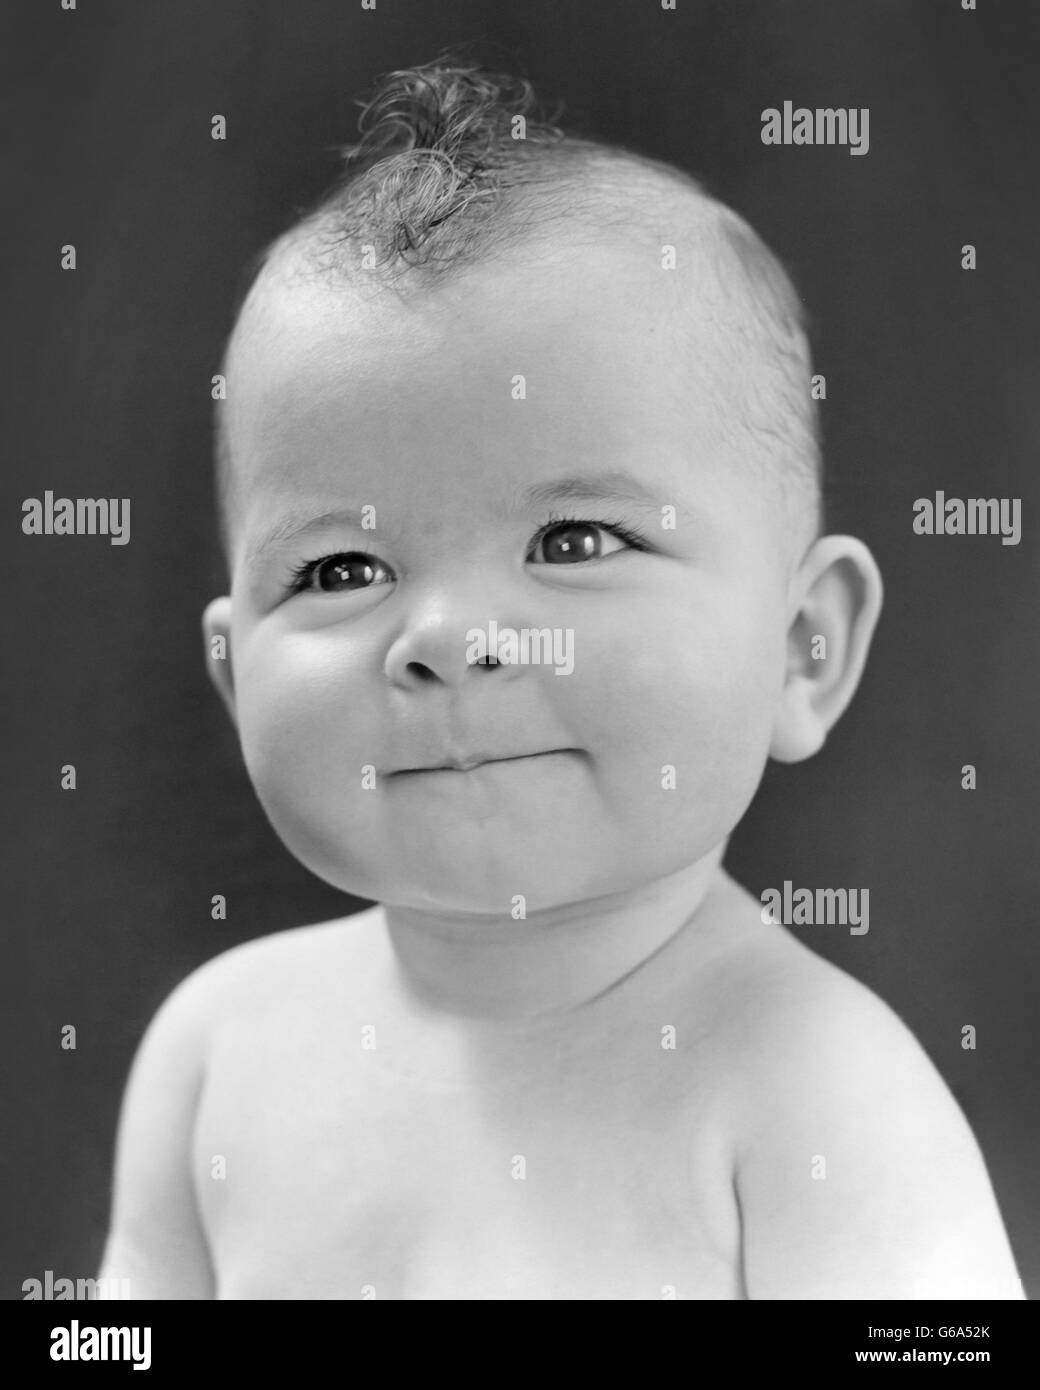 1940 1950 Retrato del bebé Cabello Natural Mohawk sonriendo mirando a la cámara CUTE ADORABLE Foto de stock